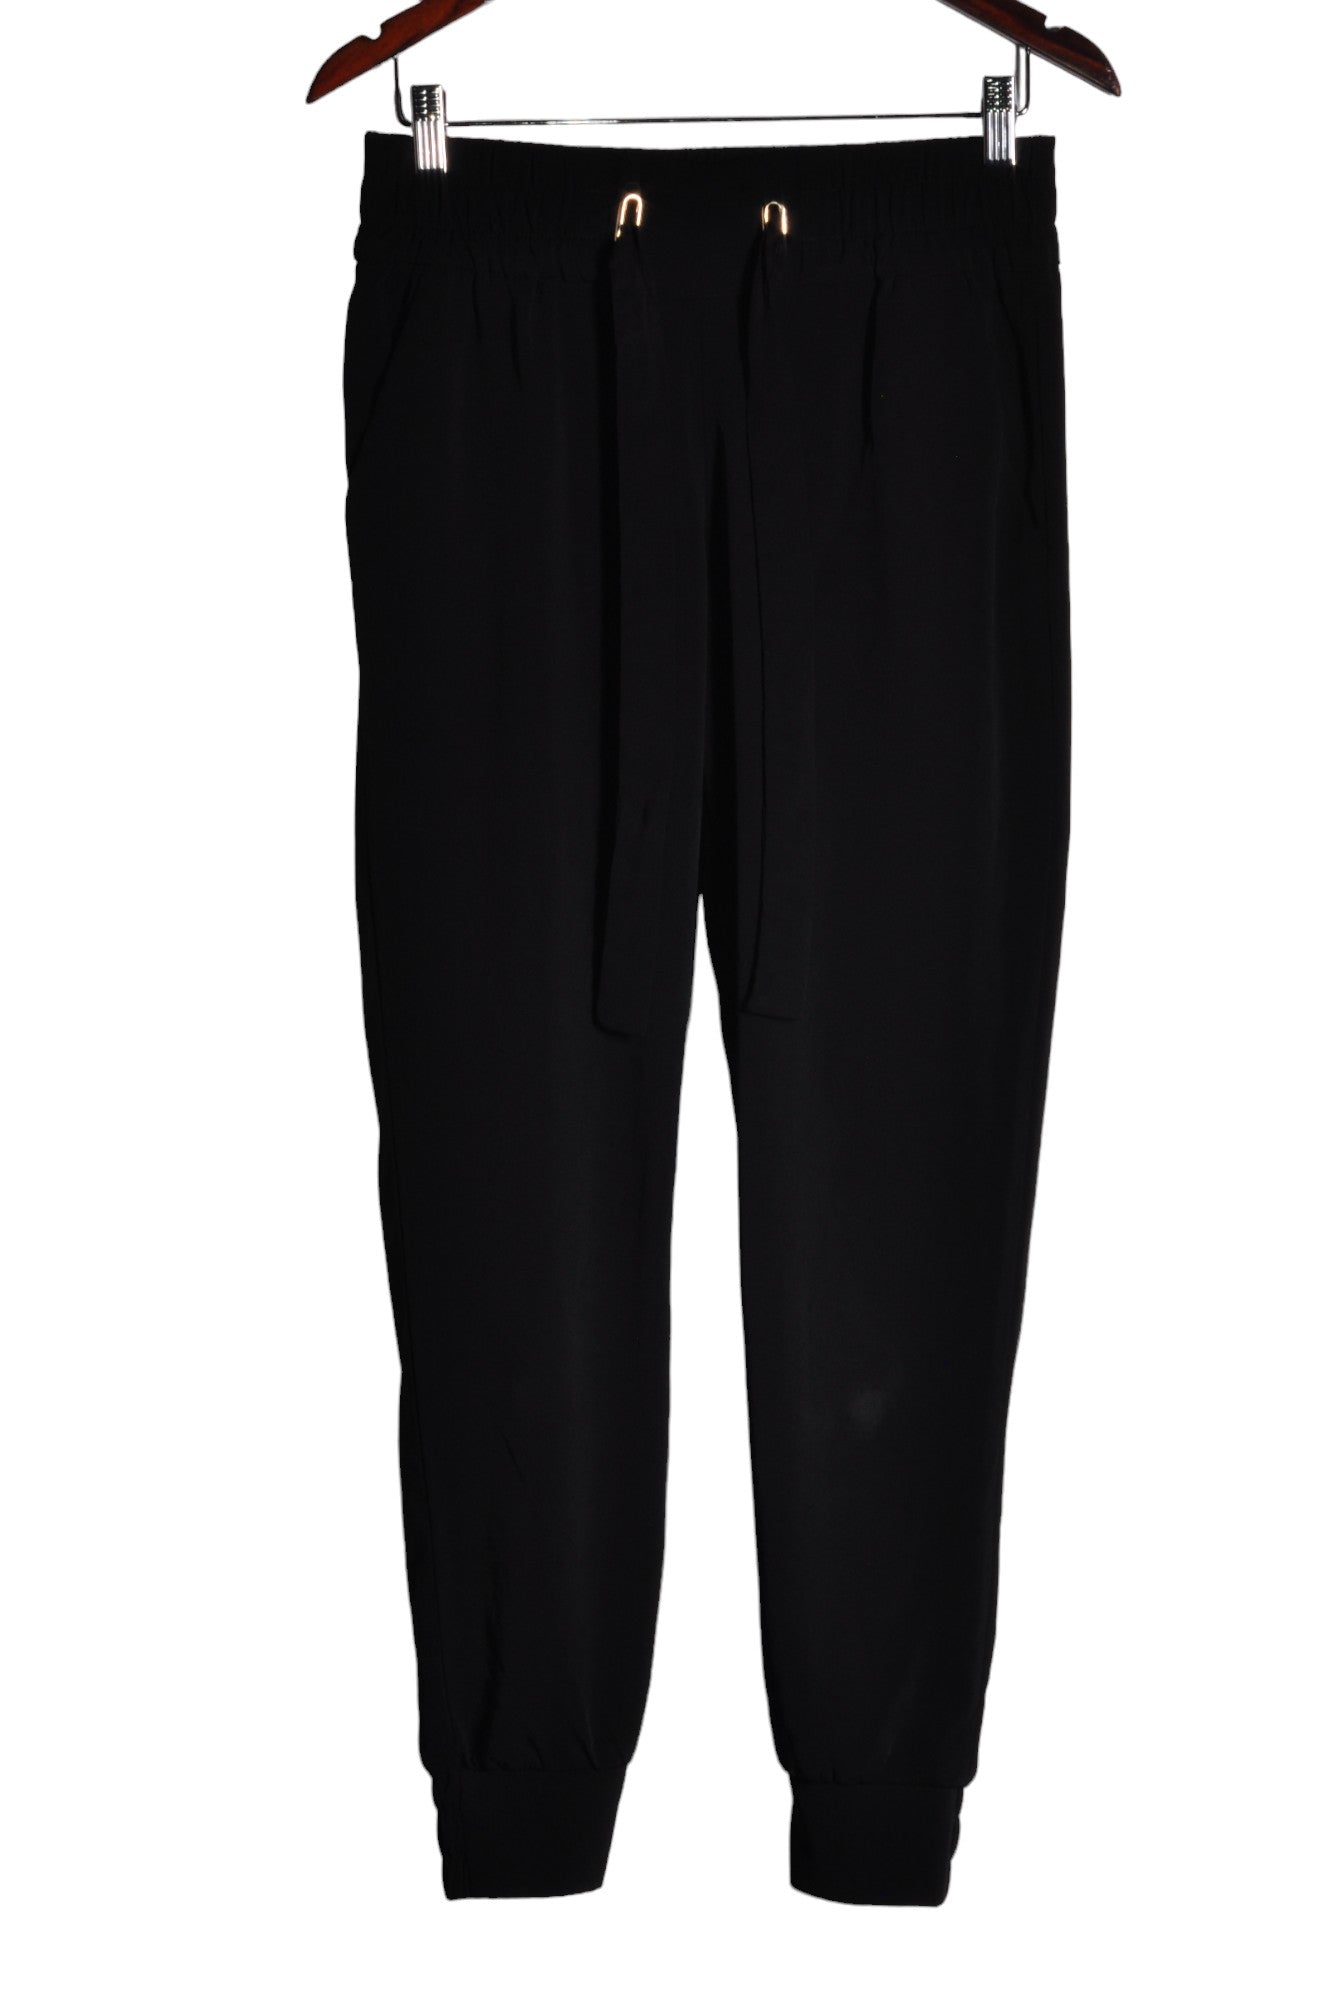 DYNAMITE Women Work Pants Regular fit in Black - Size S | 18.4 $ KOOP